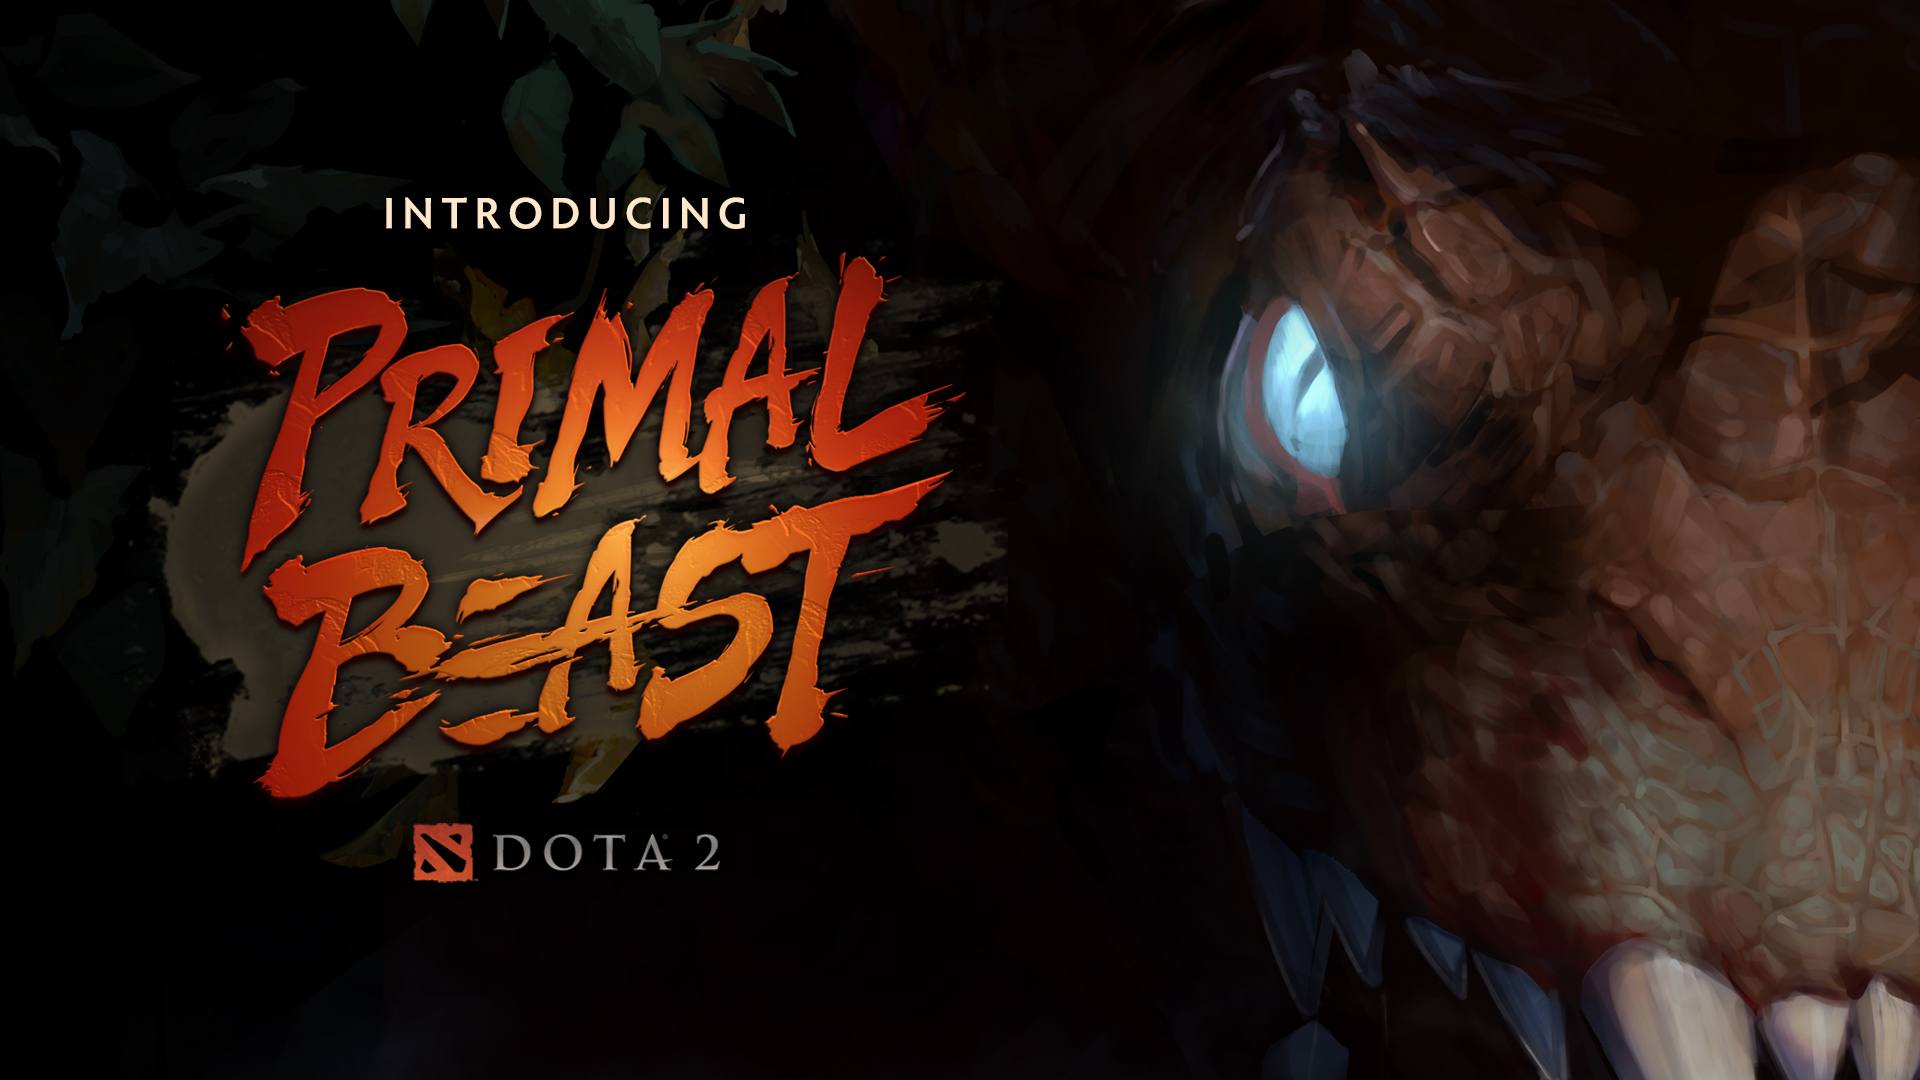 The Primal Beast Update